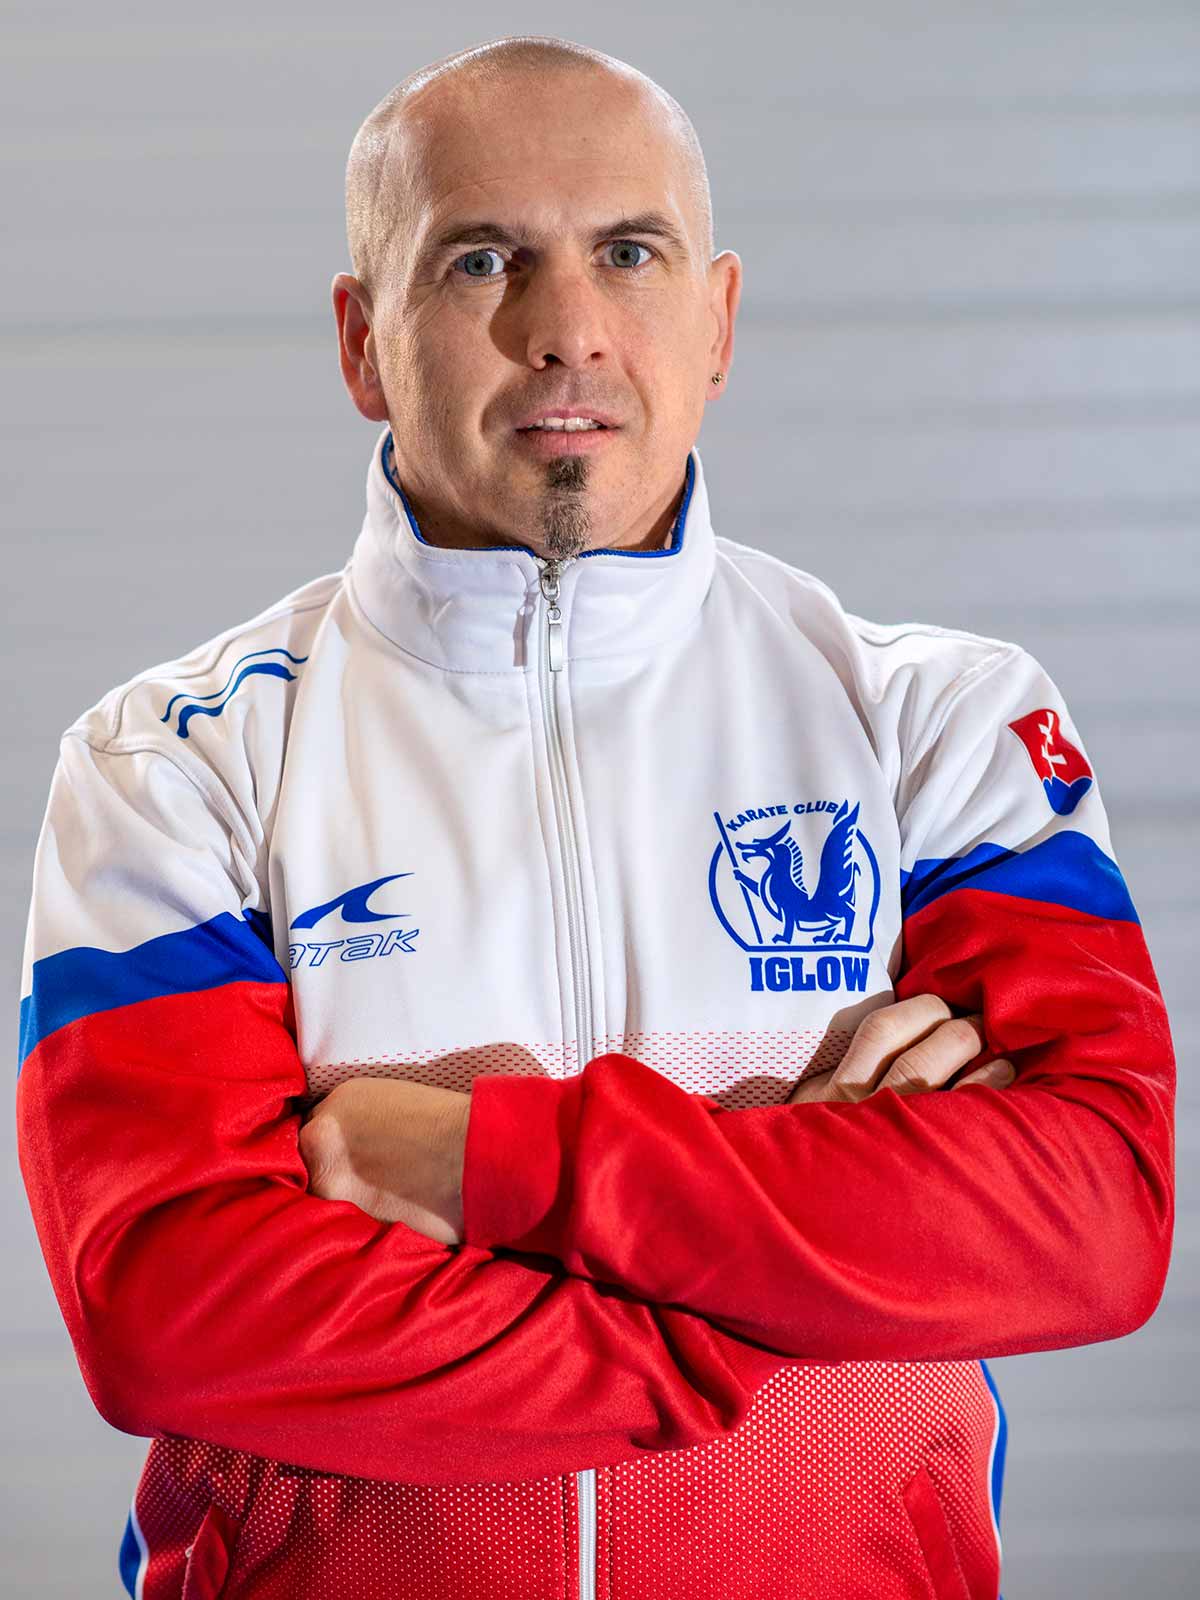 Tréner KK Iglow - Maroš Čech